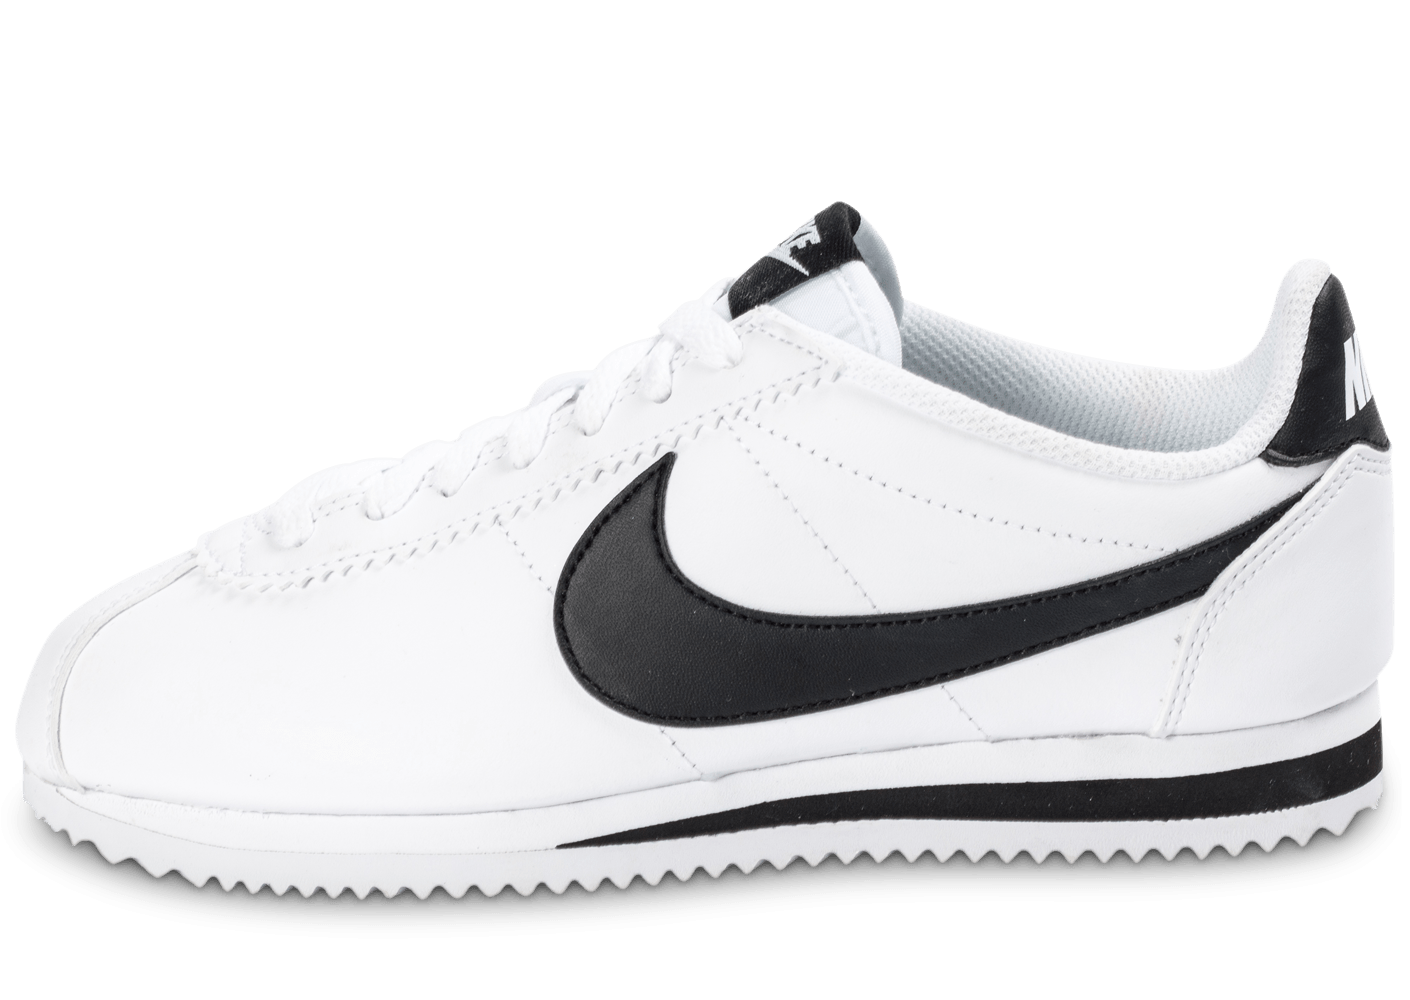 chaussures nike blanche et noir, Nike Classic Cortez Leather blanche et noire - Chaussures Toutes les baskets soldées - Chausport